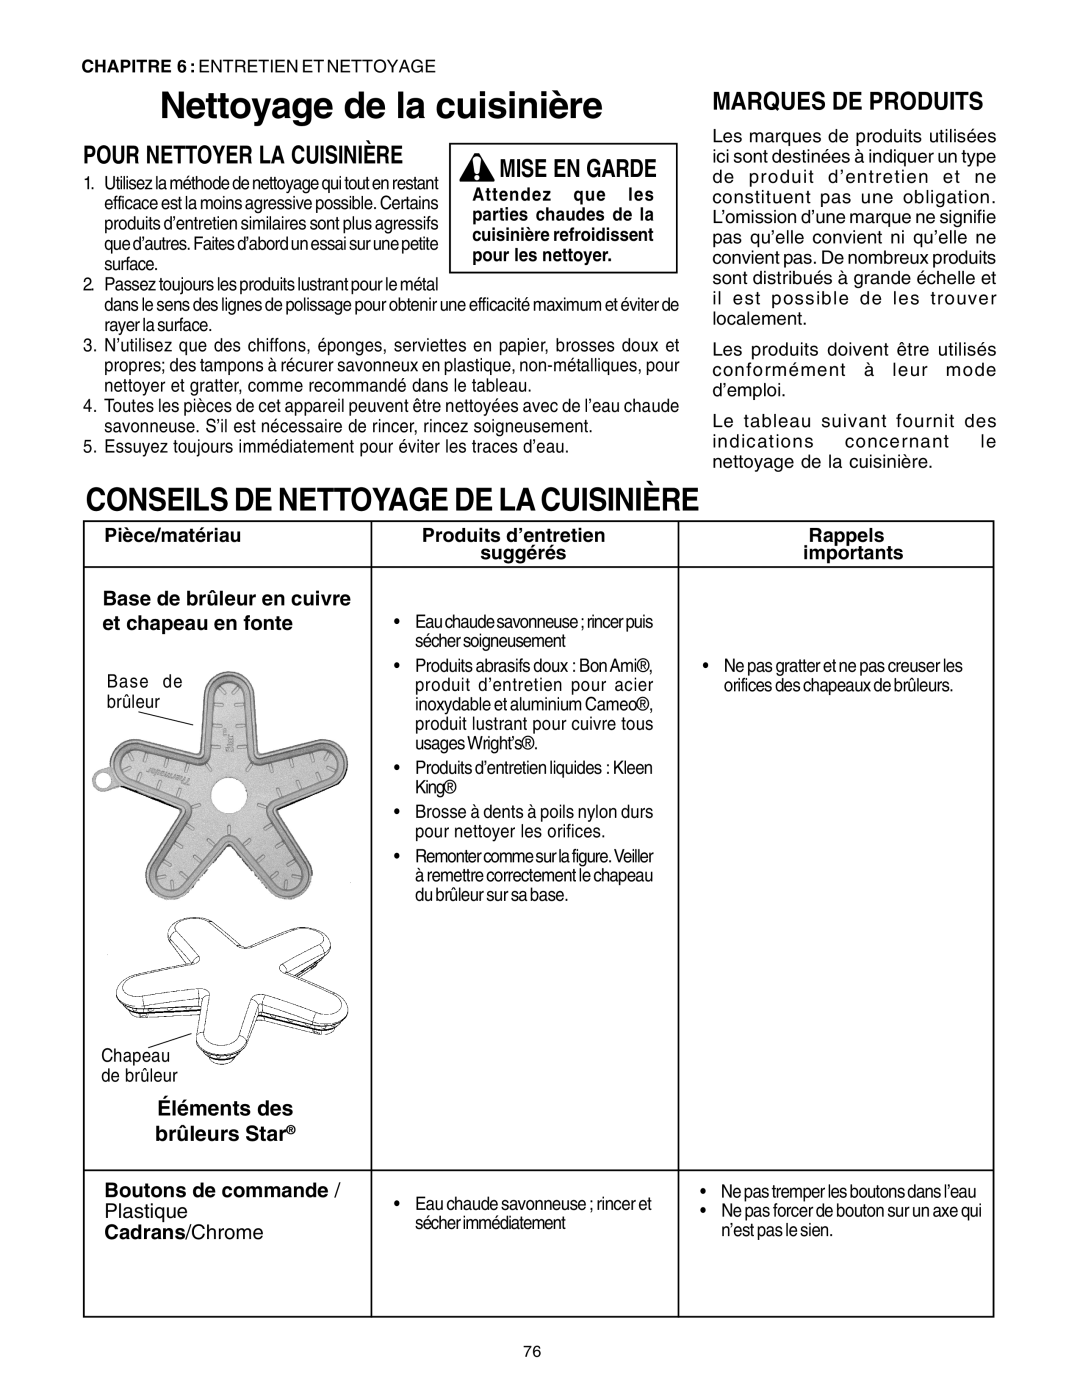 Thermador PRG30 Nettoyage de la cuisinière, Conseils De Nettoyage De La Cuisinière, Marques De Produits, Mise En Garde 